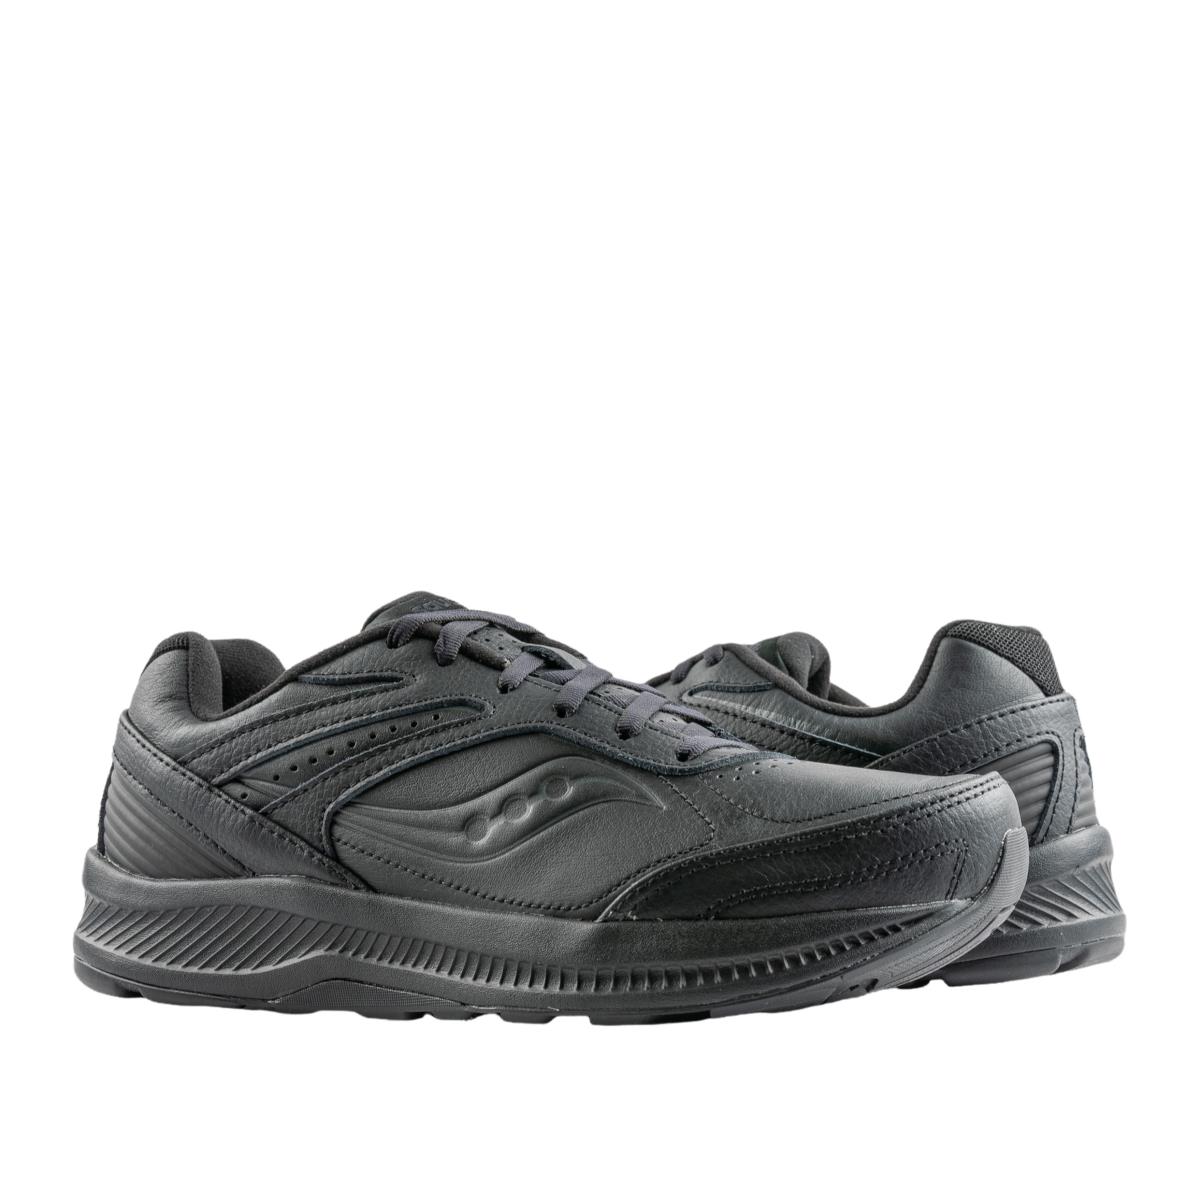 Saucony Echelon Walker 3 Extra Wide Black Men`s Walking Shoes S40209-2